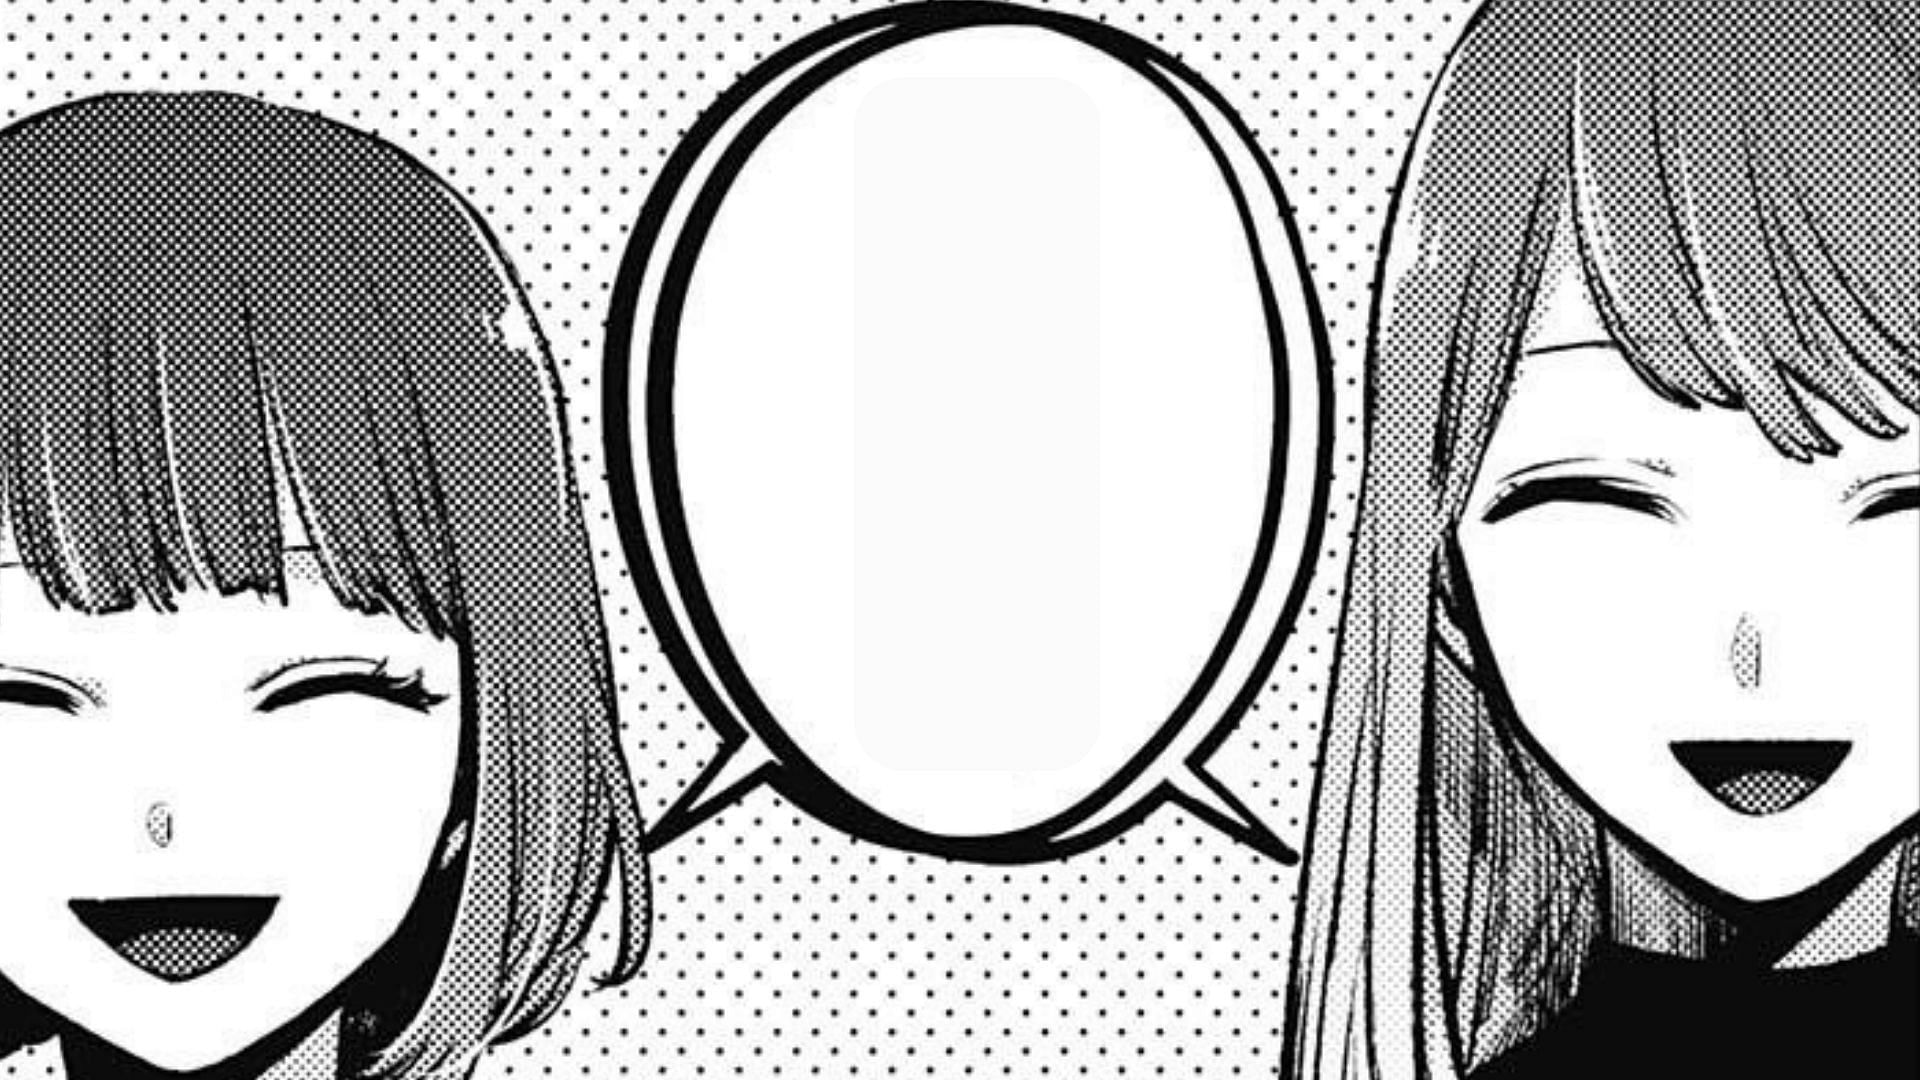 Kana and Akane as seen in the Oshi no Ko manga (Image via Shueisha)